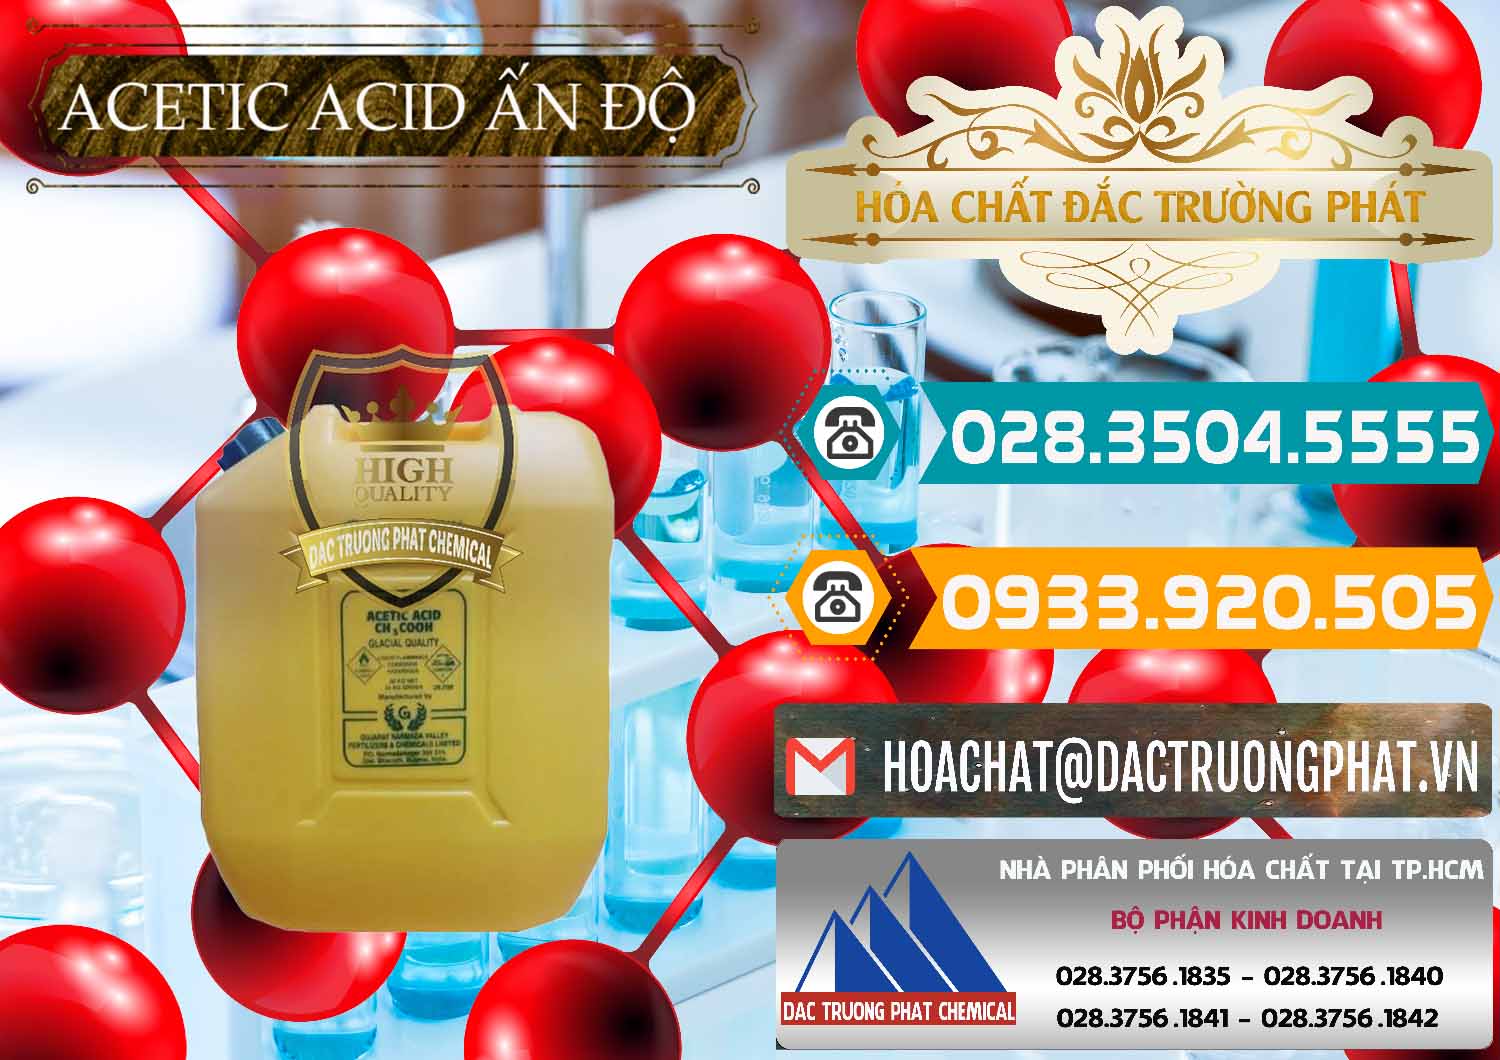 Cty bán và phân phối Acetic Acid – Axit Acetic Ấn Độ India - 0359 - Công ty cung cấp & bán hóa chất tại TP.HCM - congtyhoachat.vn